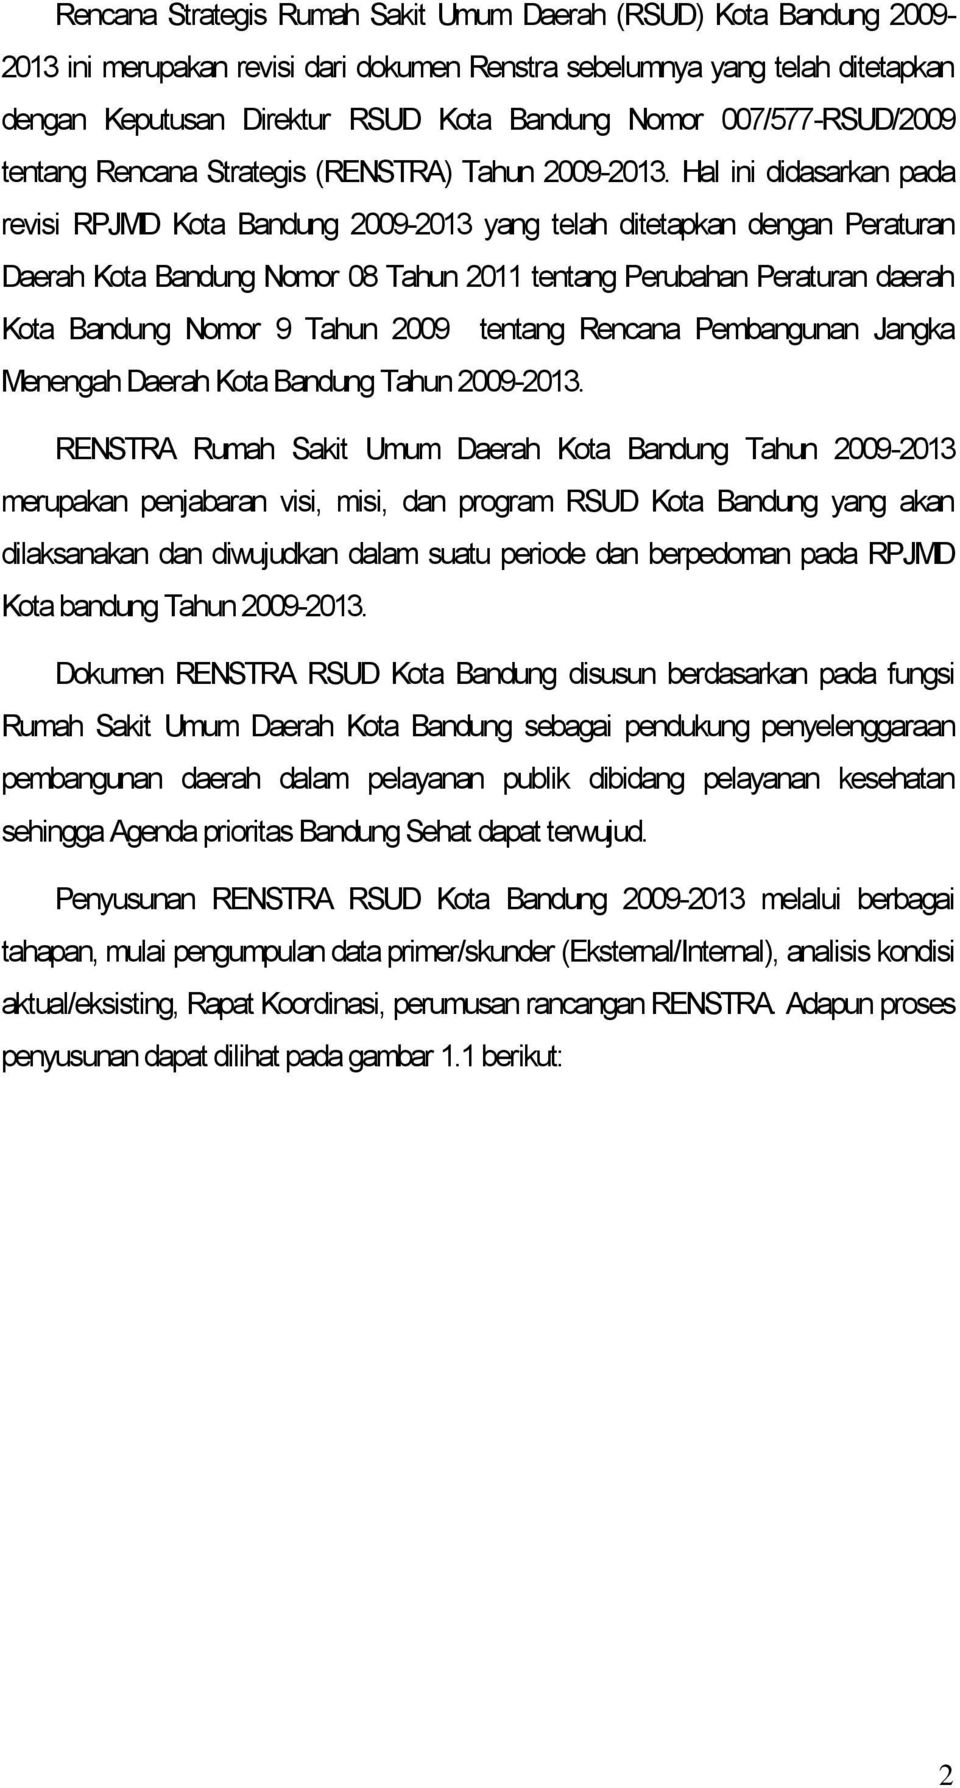 Hal ini didasarkan pada revisi RPJMD Kota Bandung 2009-2013 yang telah ditetapkan dengan Peraturan Daerah Kota Bandung Nomor 08 Tahun 2011 tentang Perubahan Peraturan daerah Kota Bandung Nomor 9